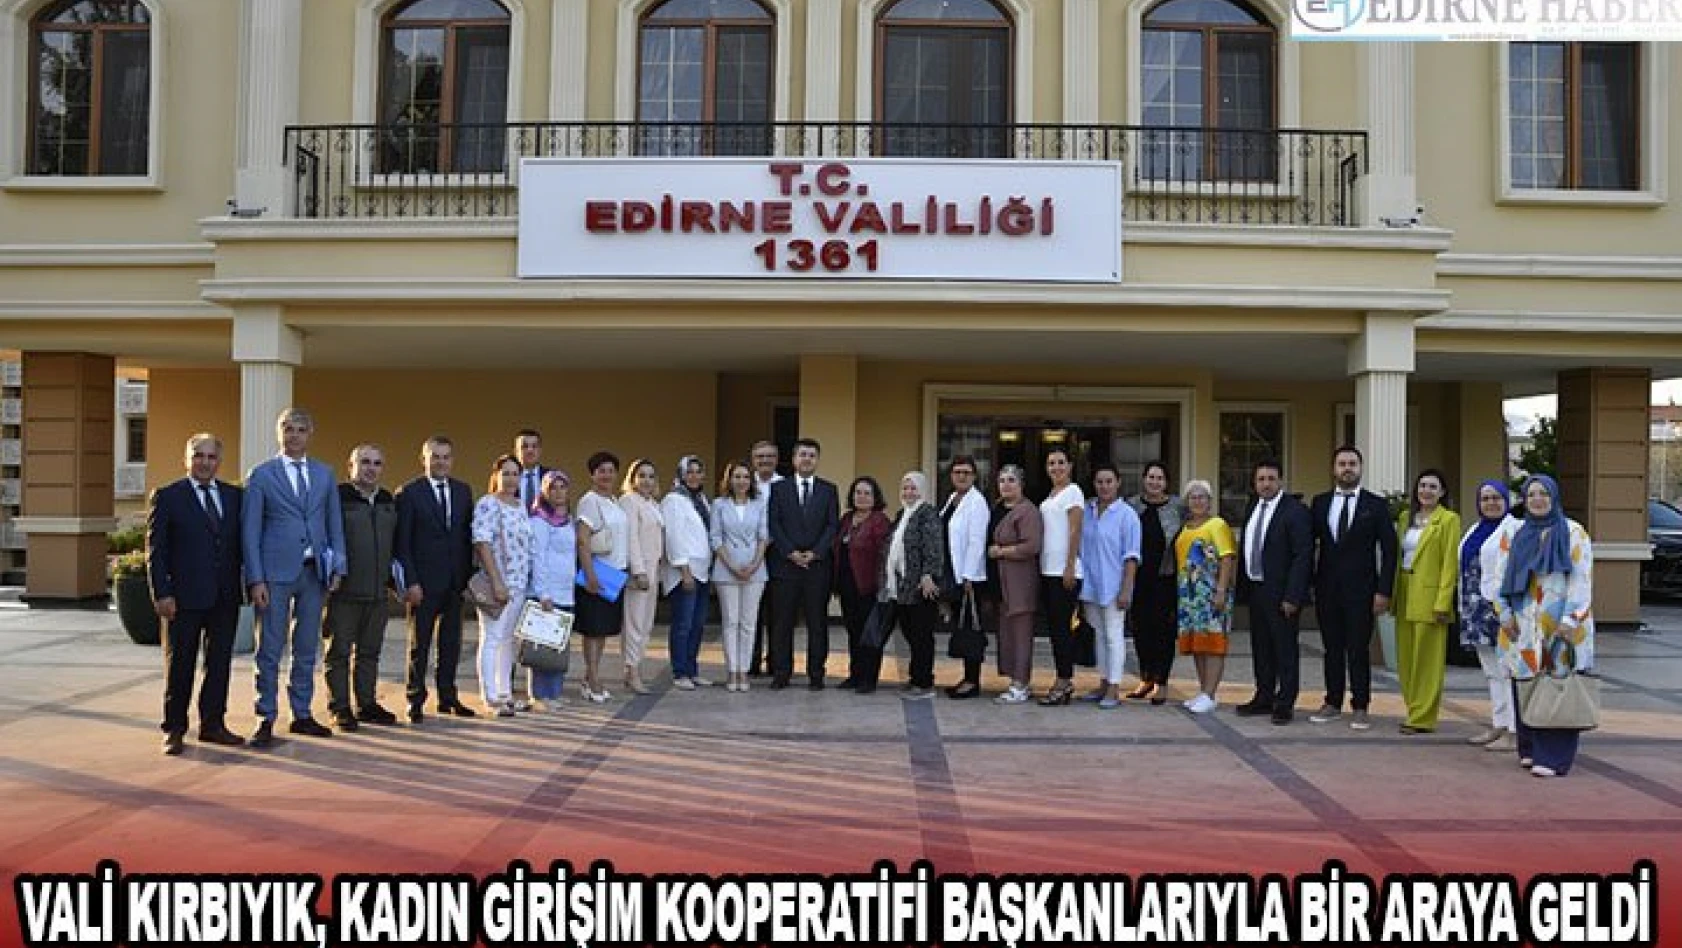 Vali Kırbıyık, kadın girişim kooperatifi başkanlarıyla bir araya geldi